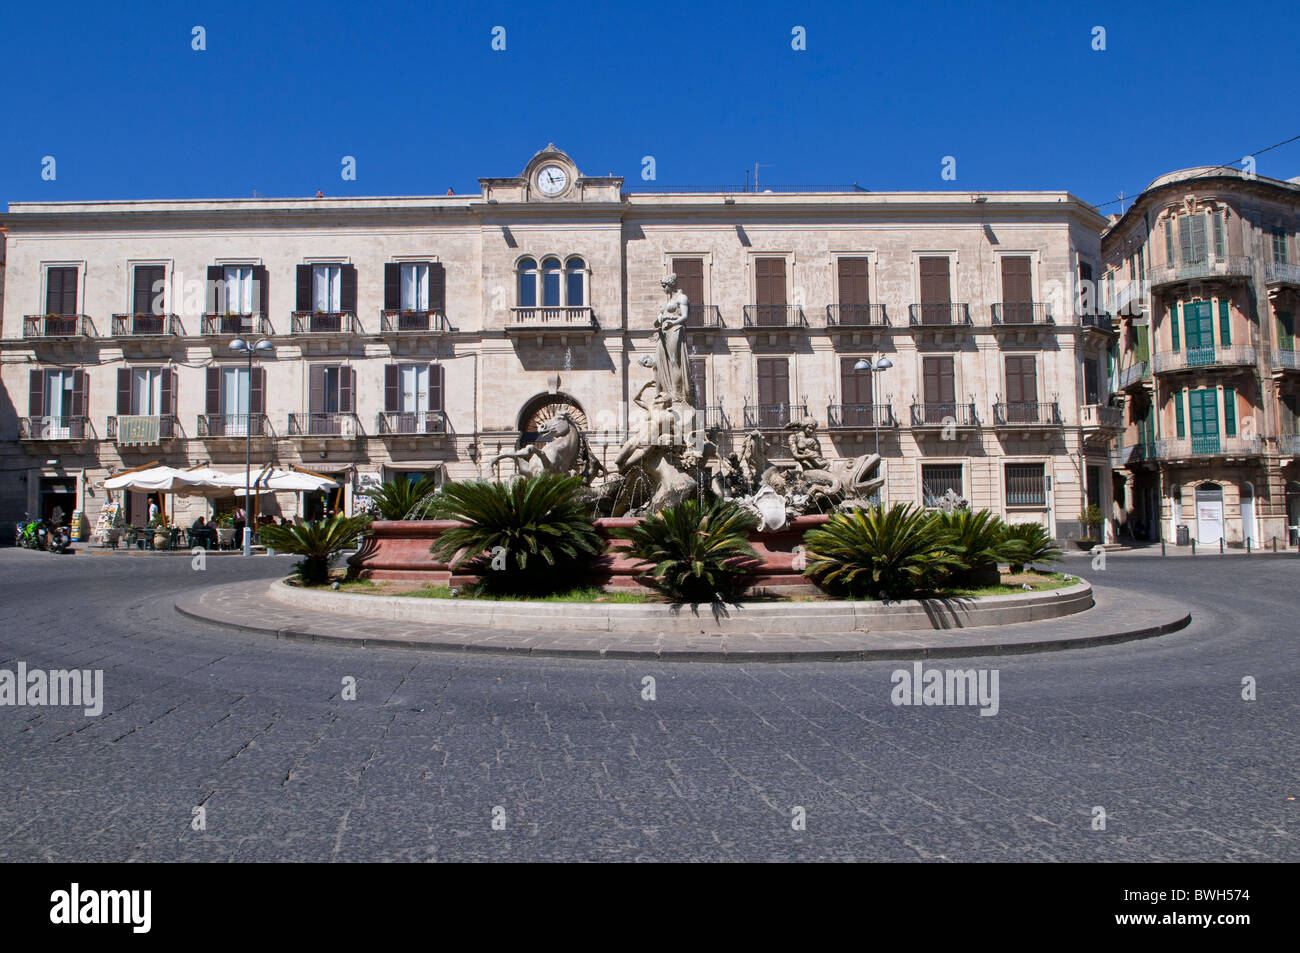 Europa, Italien, Sizilien, Siracusa, Statue der Artemis (Ende des 19. Jahrhunderts von Giulio Moschetti), Piazza Archimede, Ortygia Stockfoto